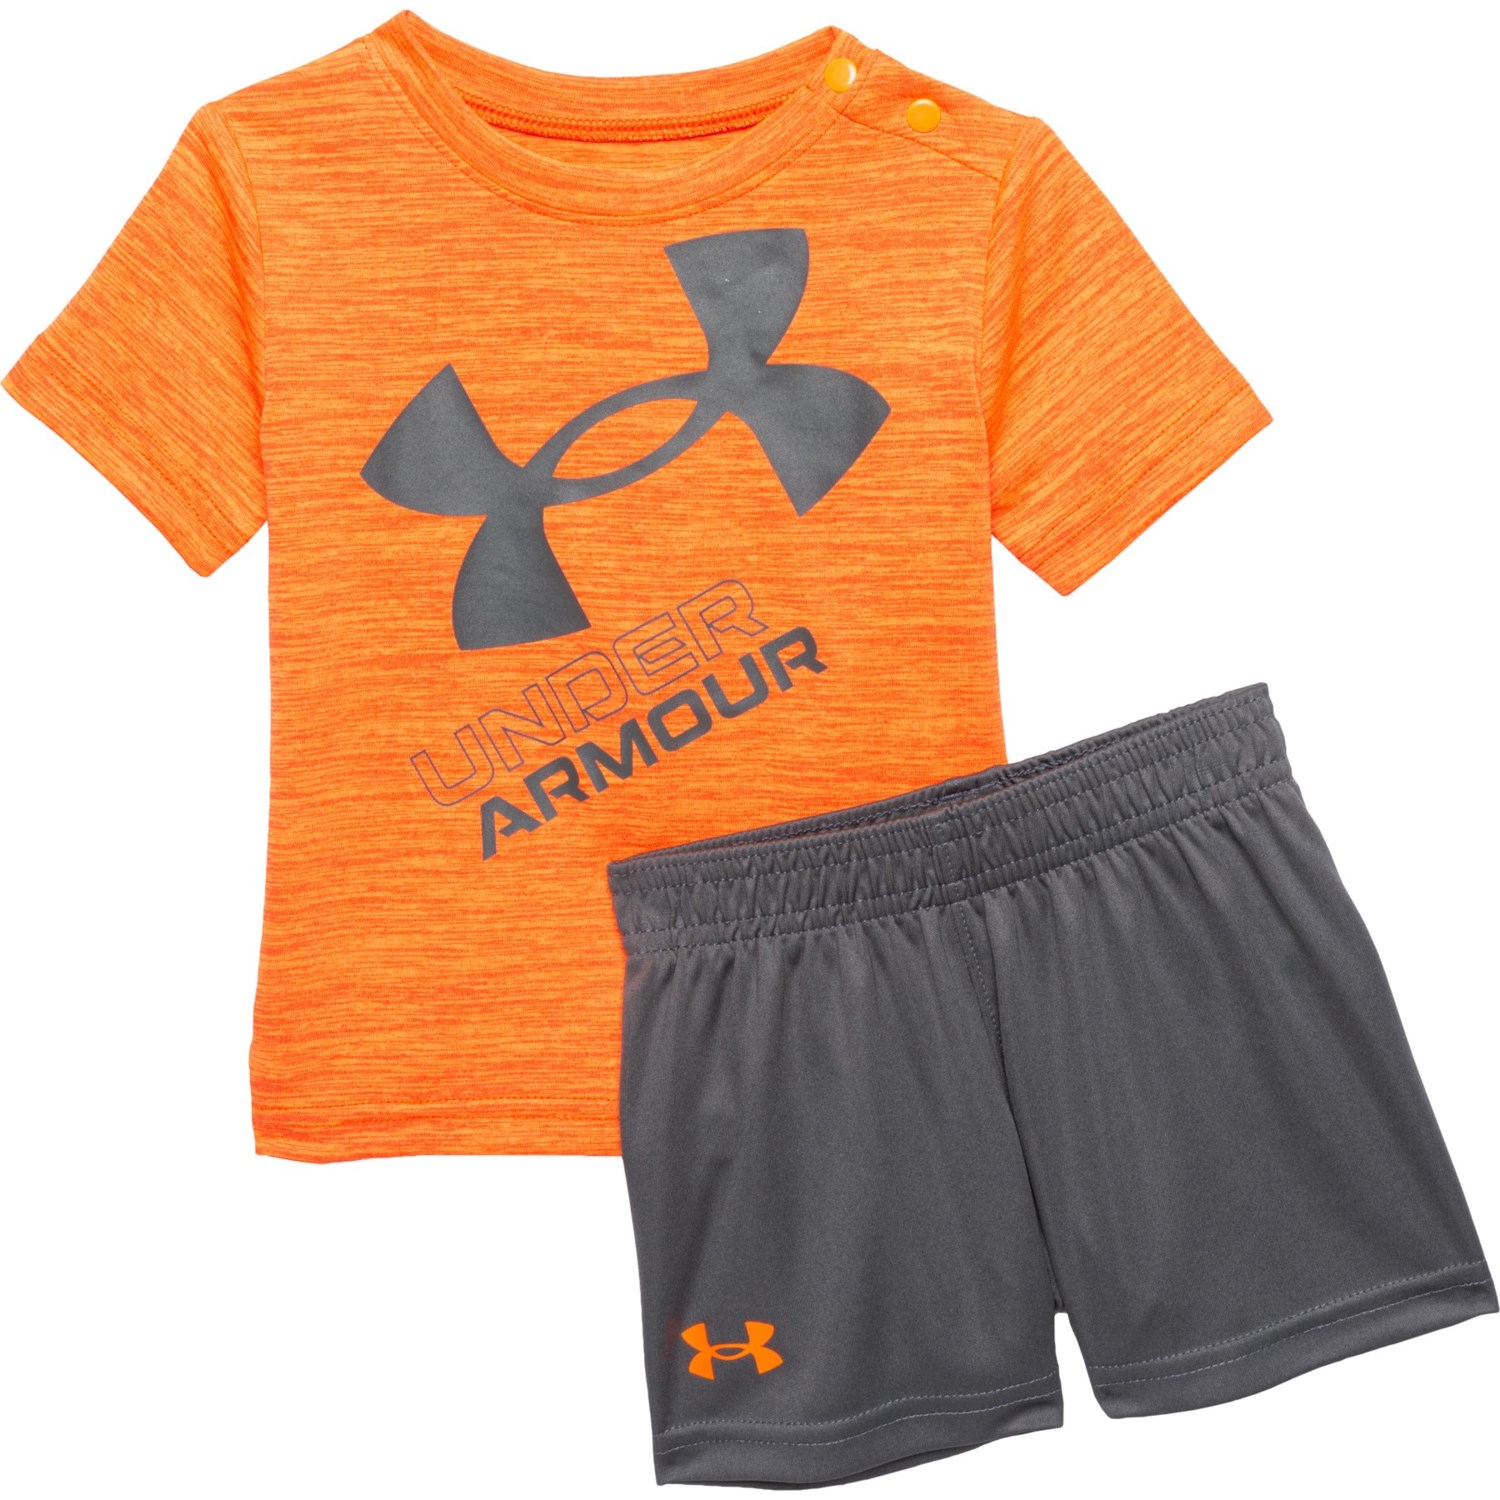 Under Armour Infant Boys Twist Slanted Logo T-Shirt and Shorts Set - Short Sleeve